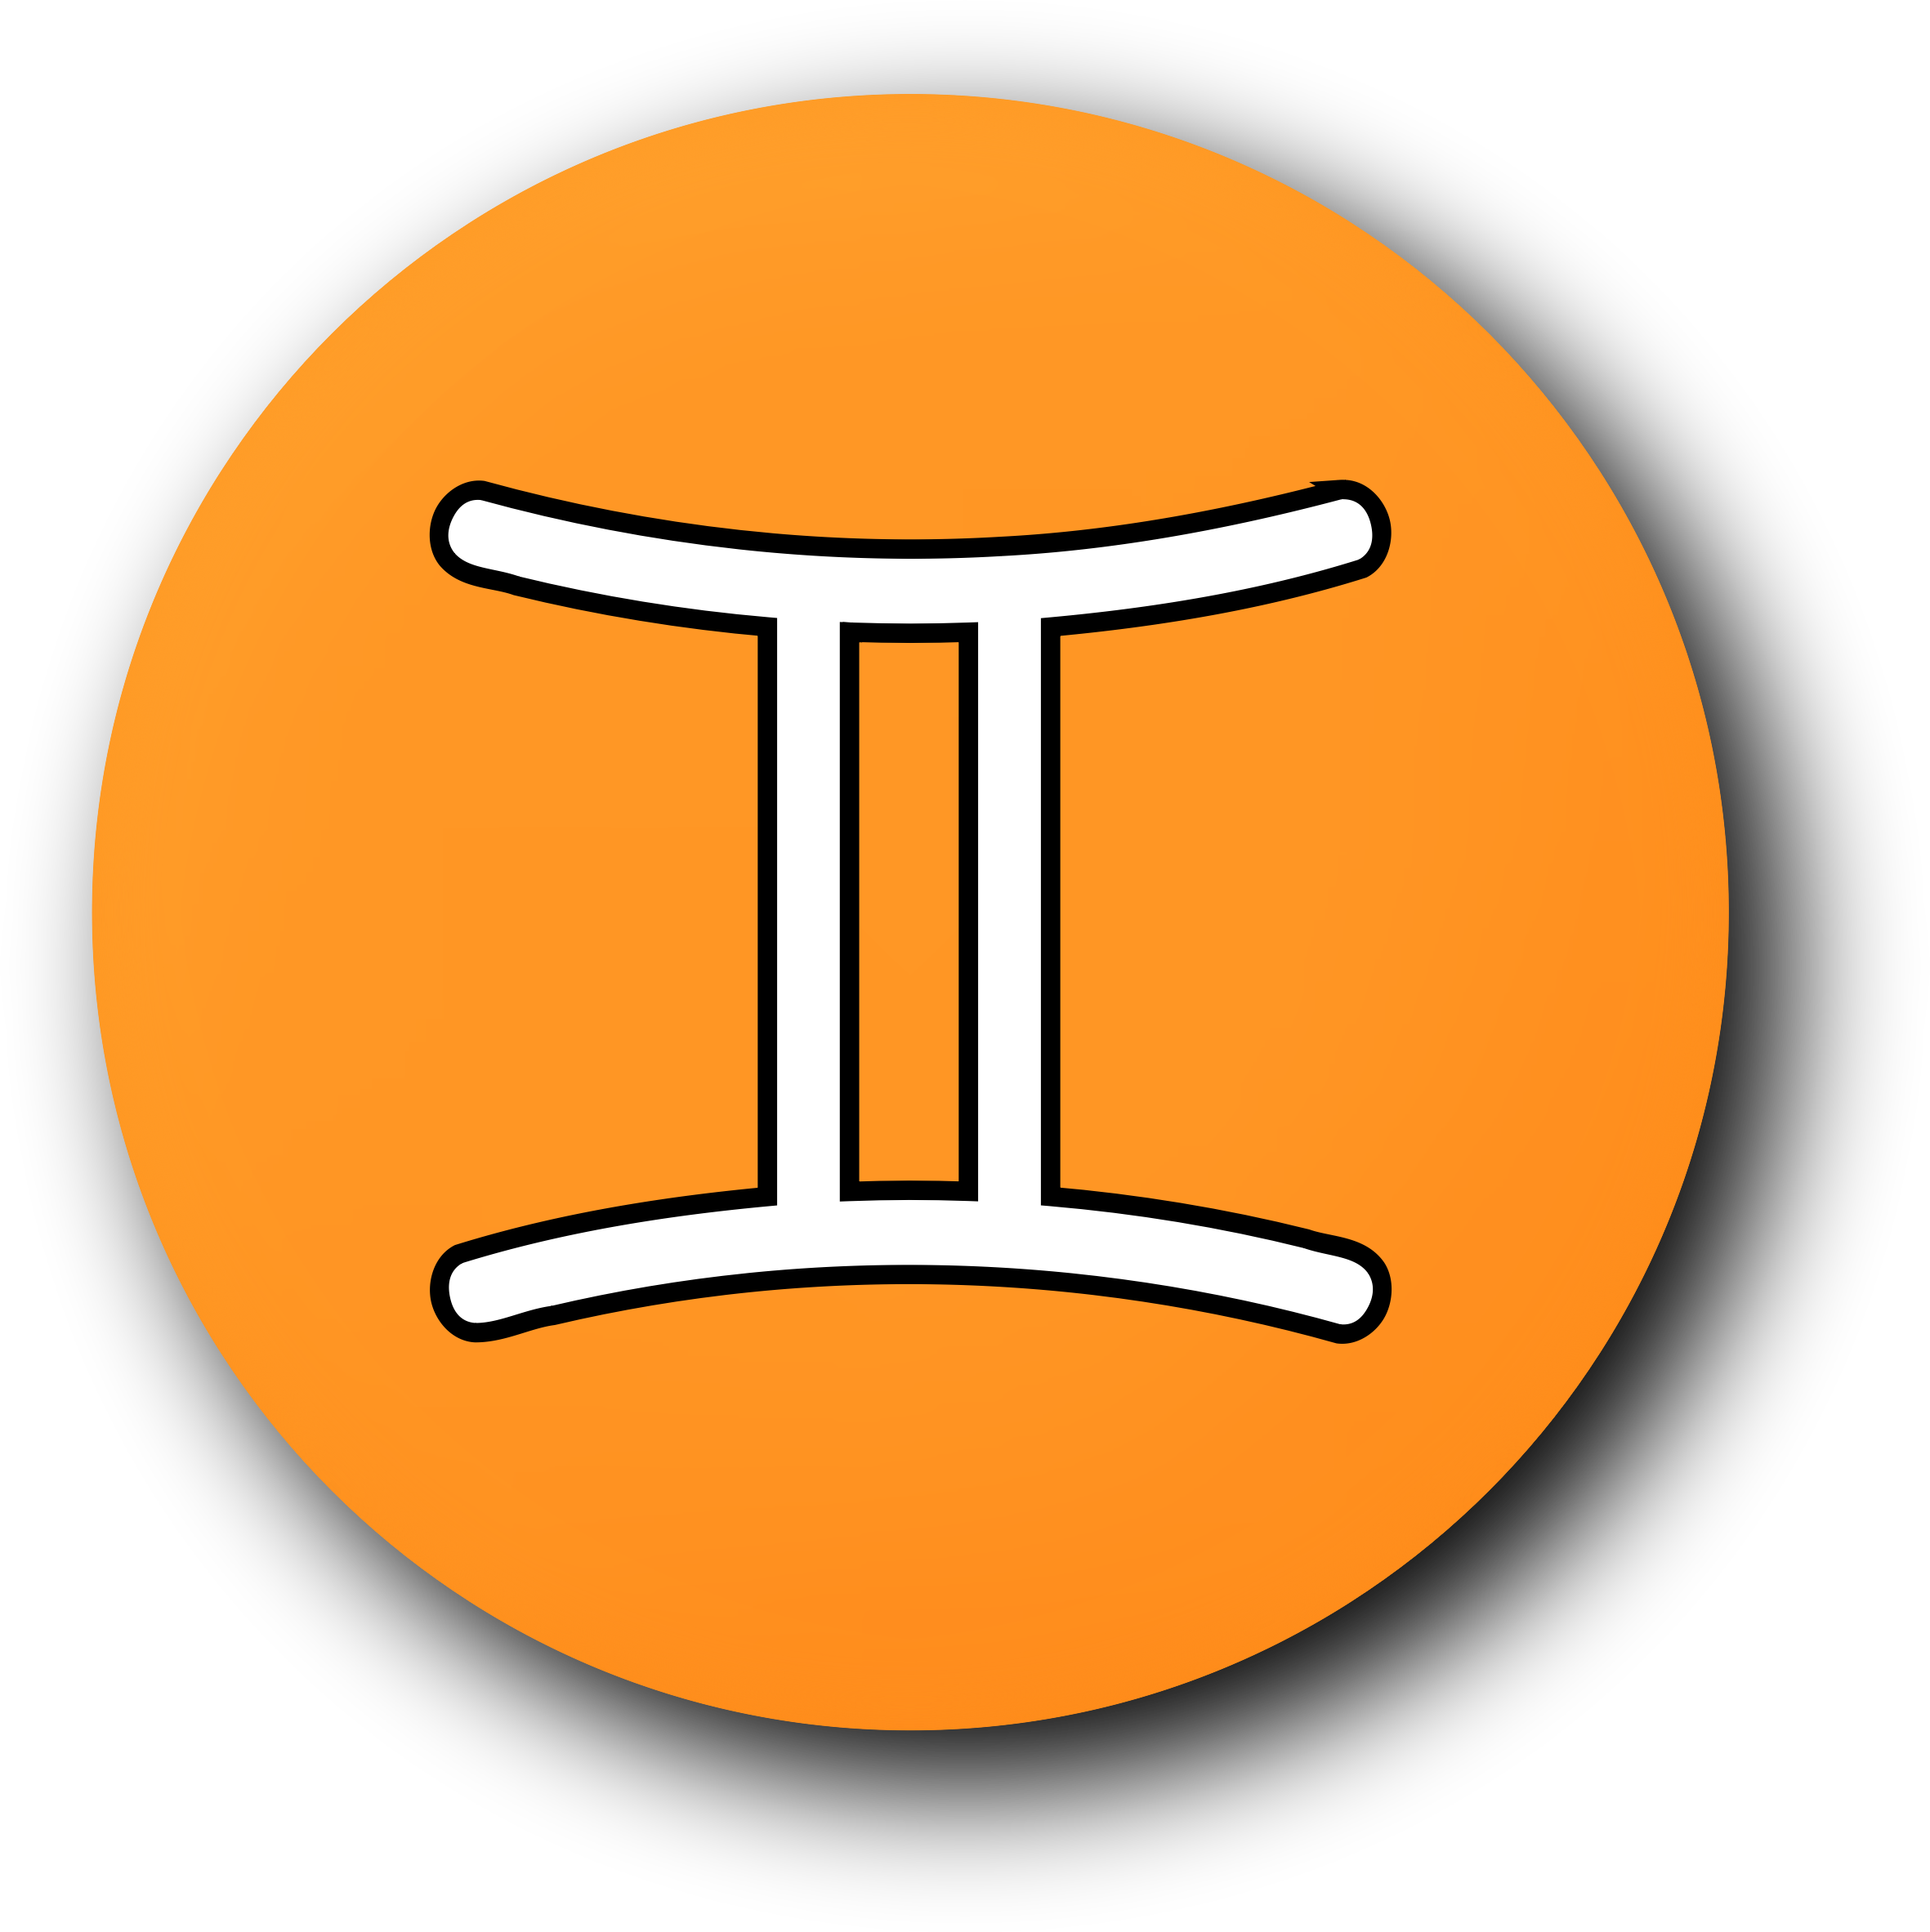 gemini symbol meaning